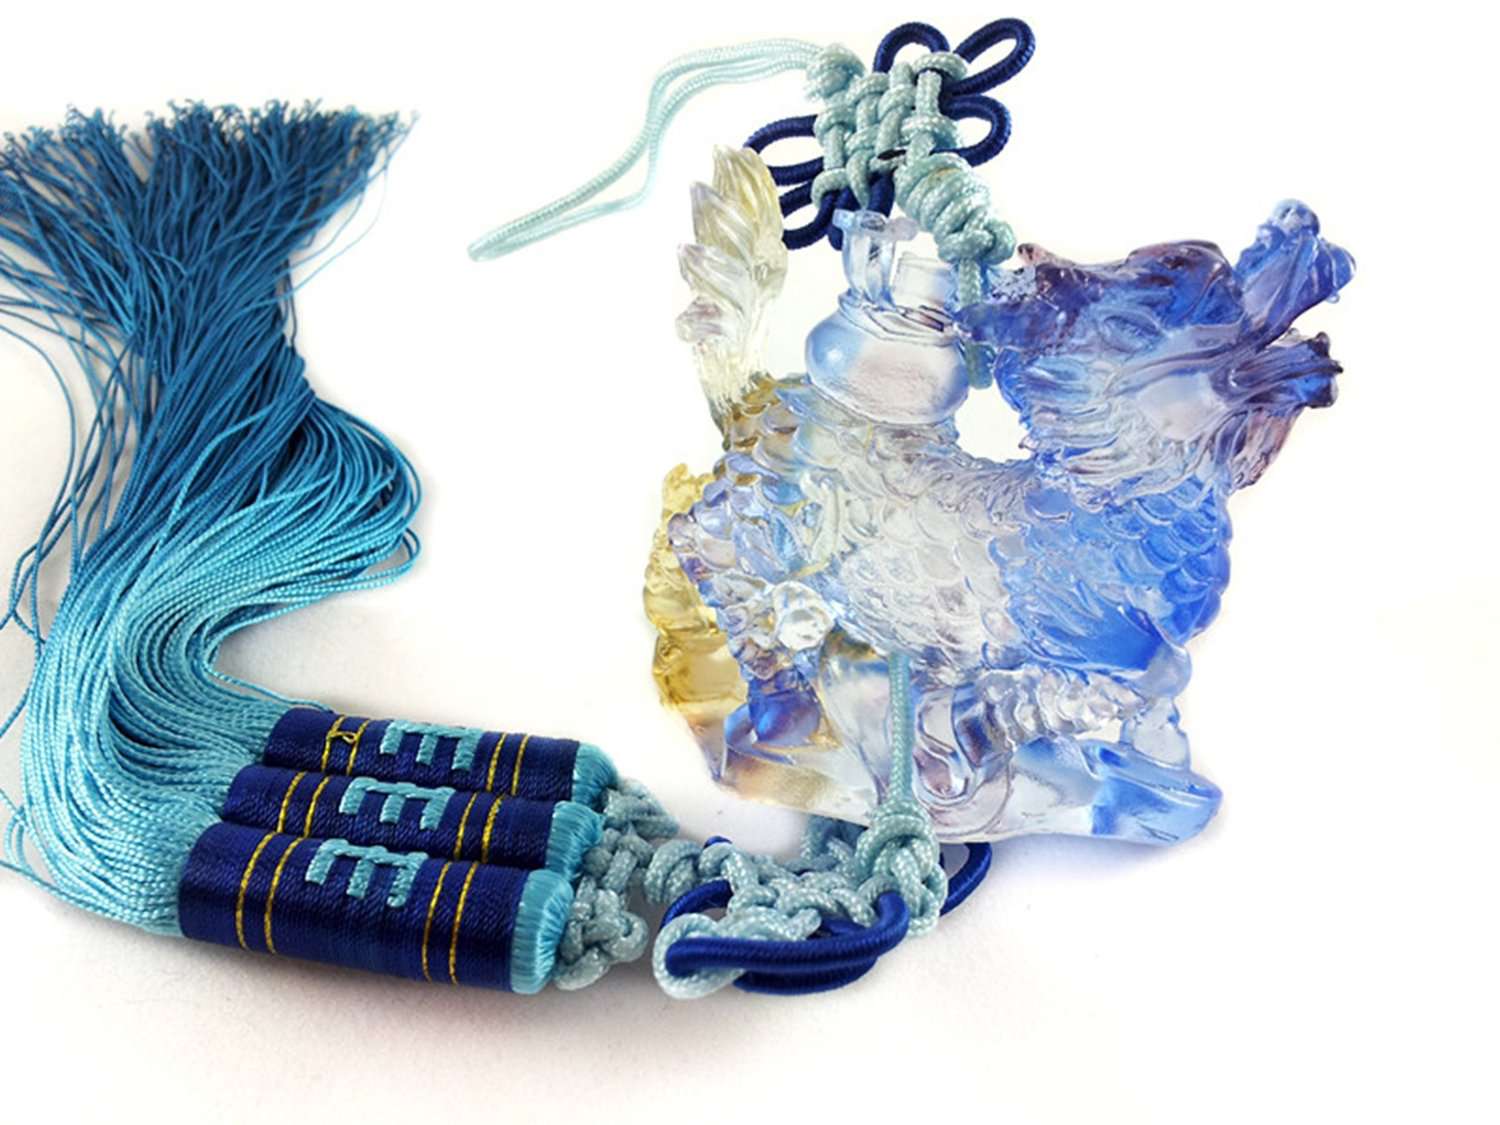 Amuleto Chi Lin de cristal con borlas azul verdoso